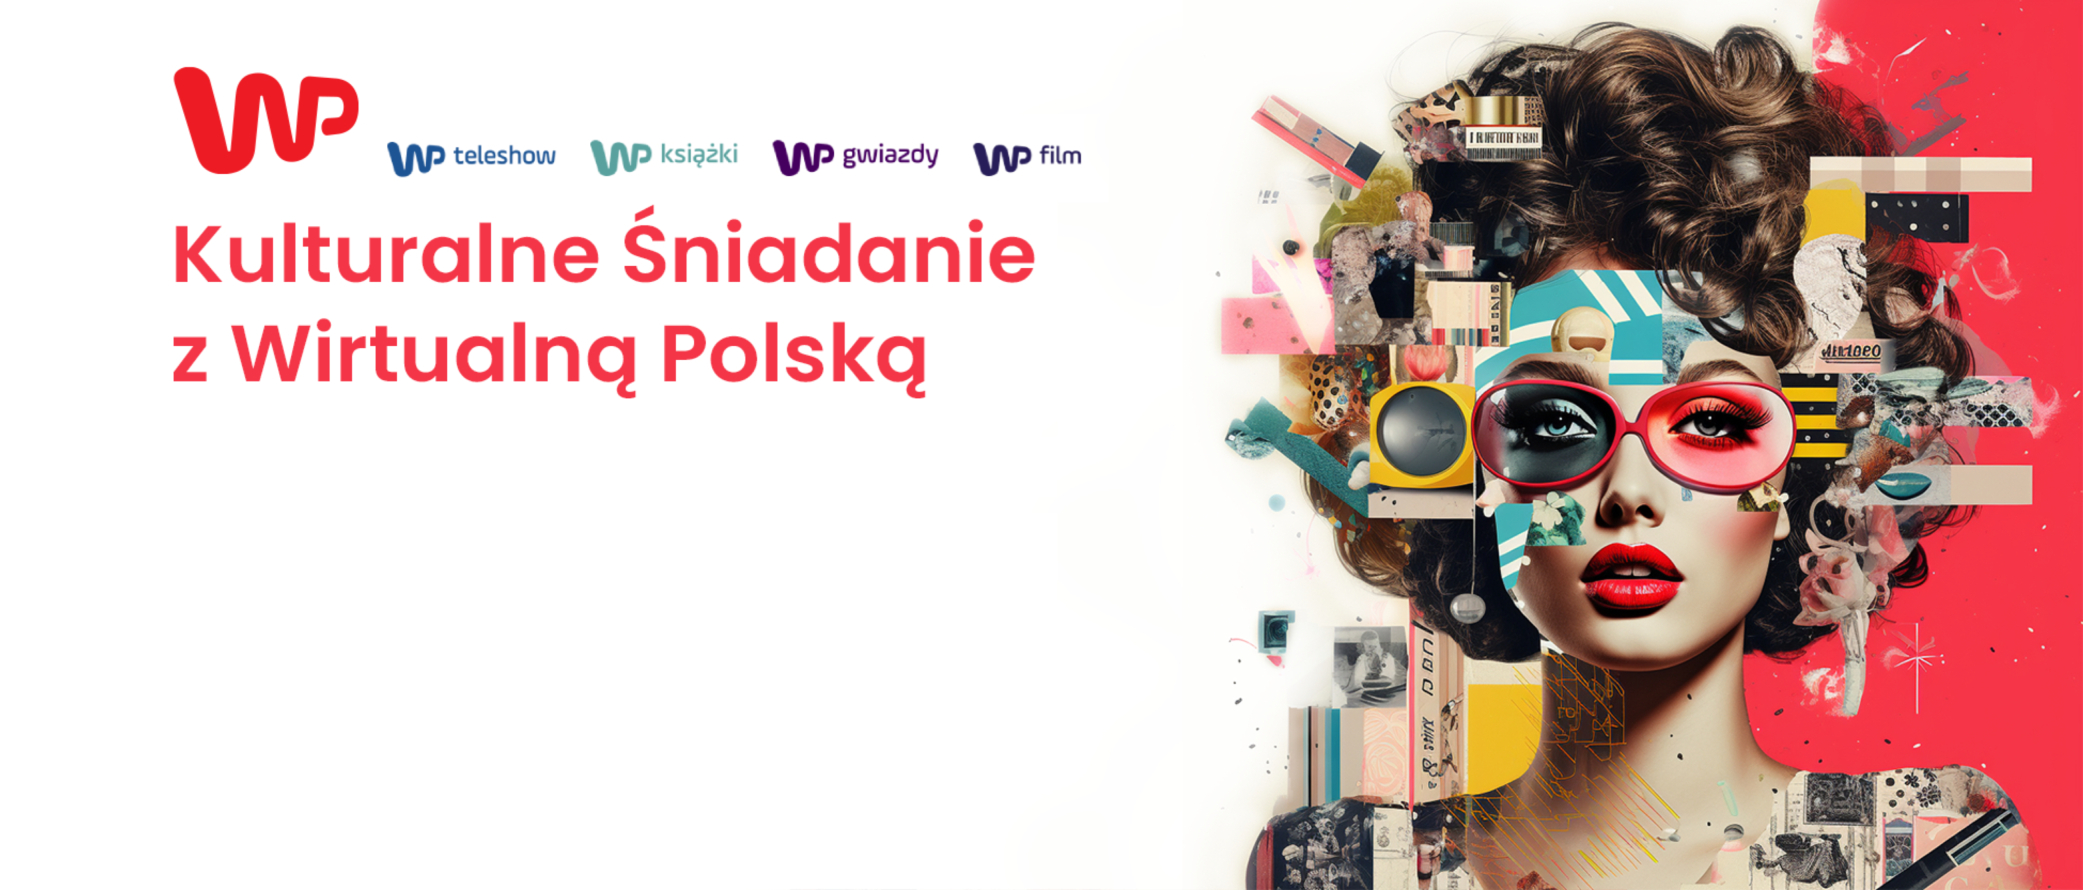 Kulturalne śniadanie w Wirtualnej Polsce 